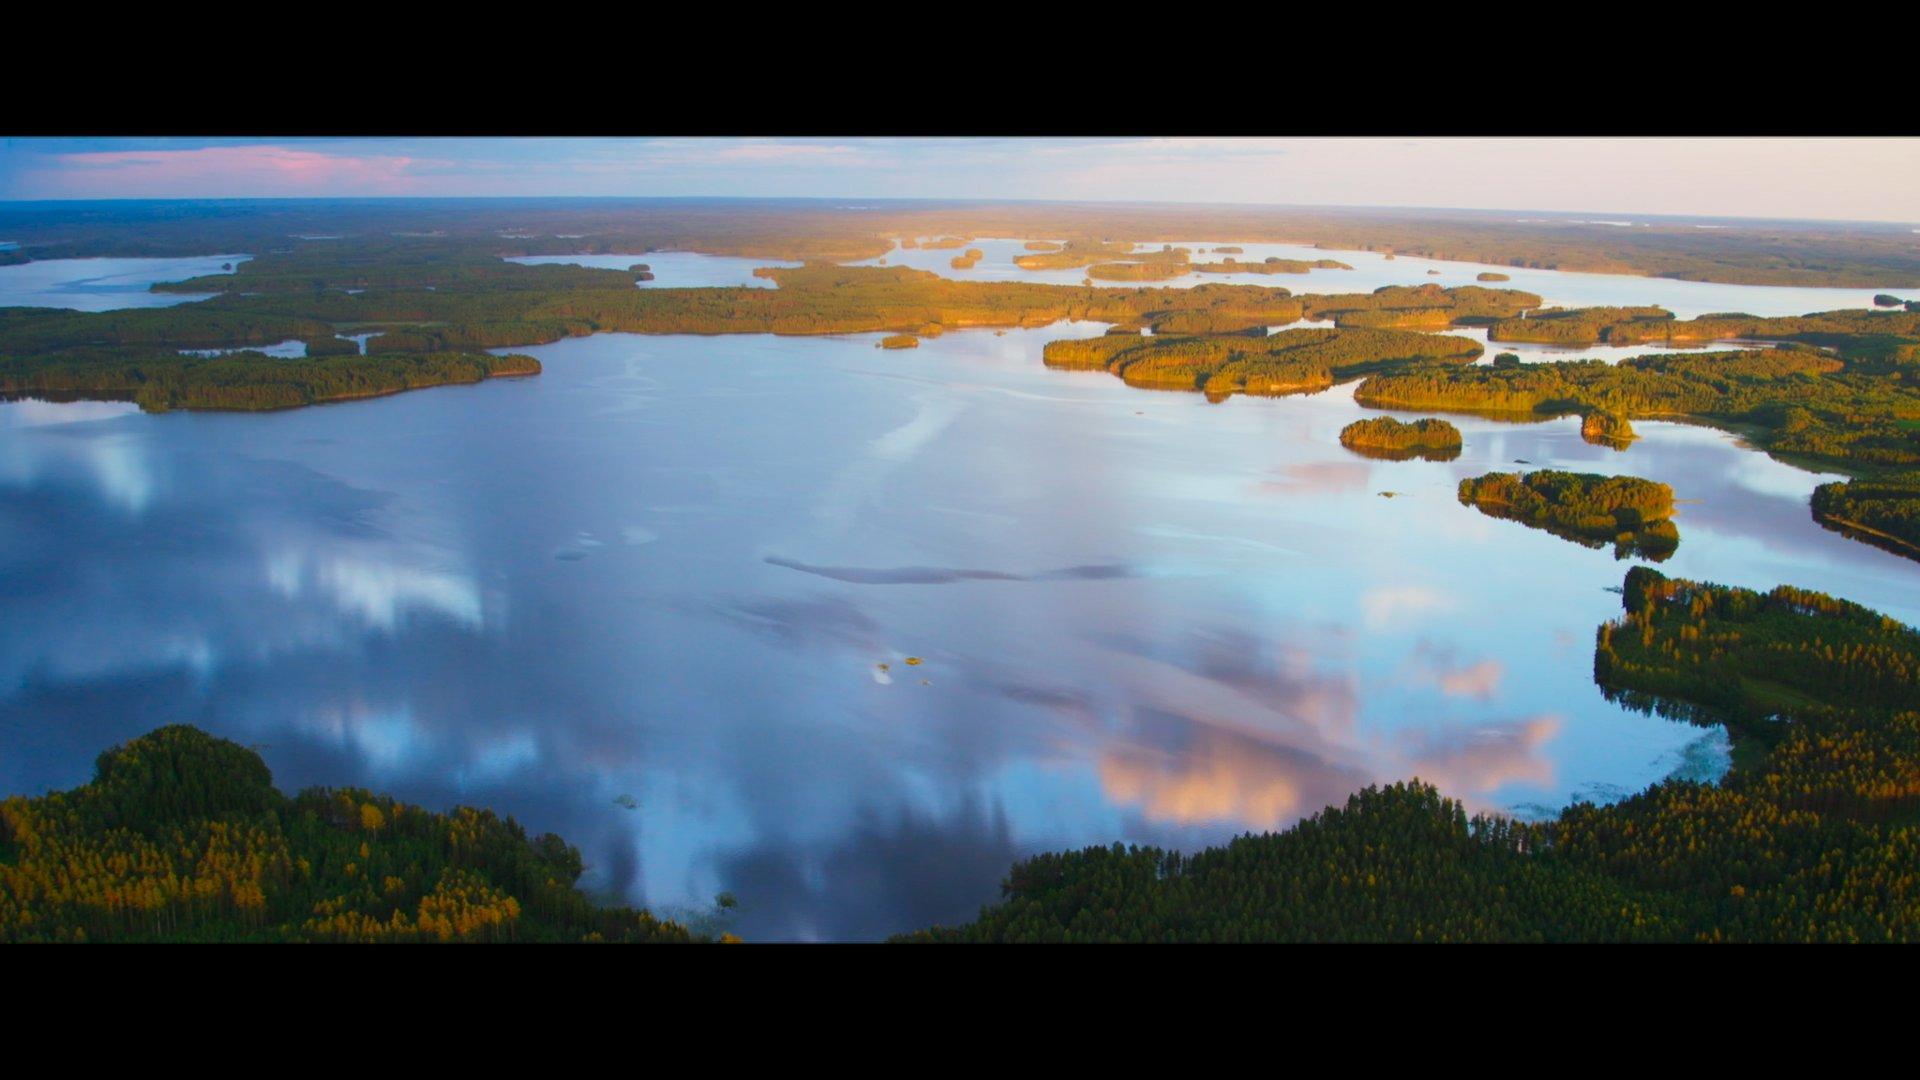 Verlosung: 2 x DVD der Dokumentation “Der magische See – Tale of a Lake” zu gewinnen!